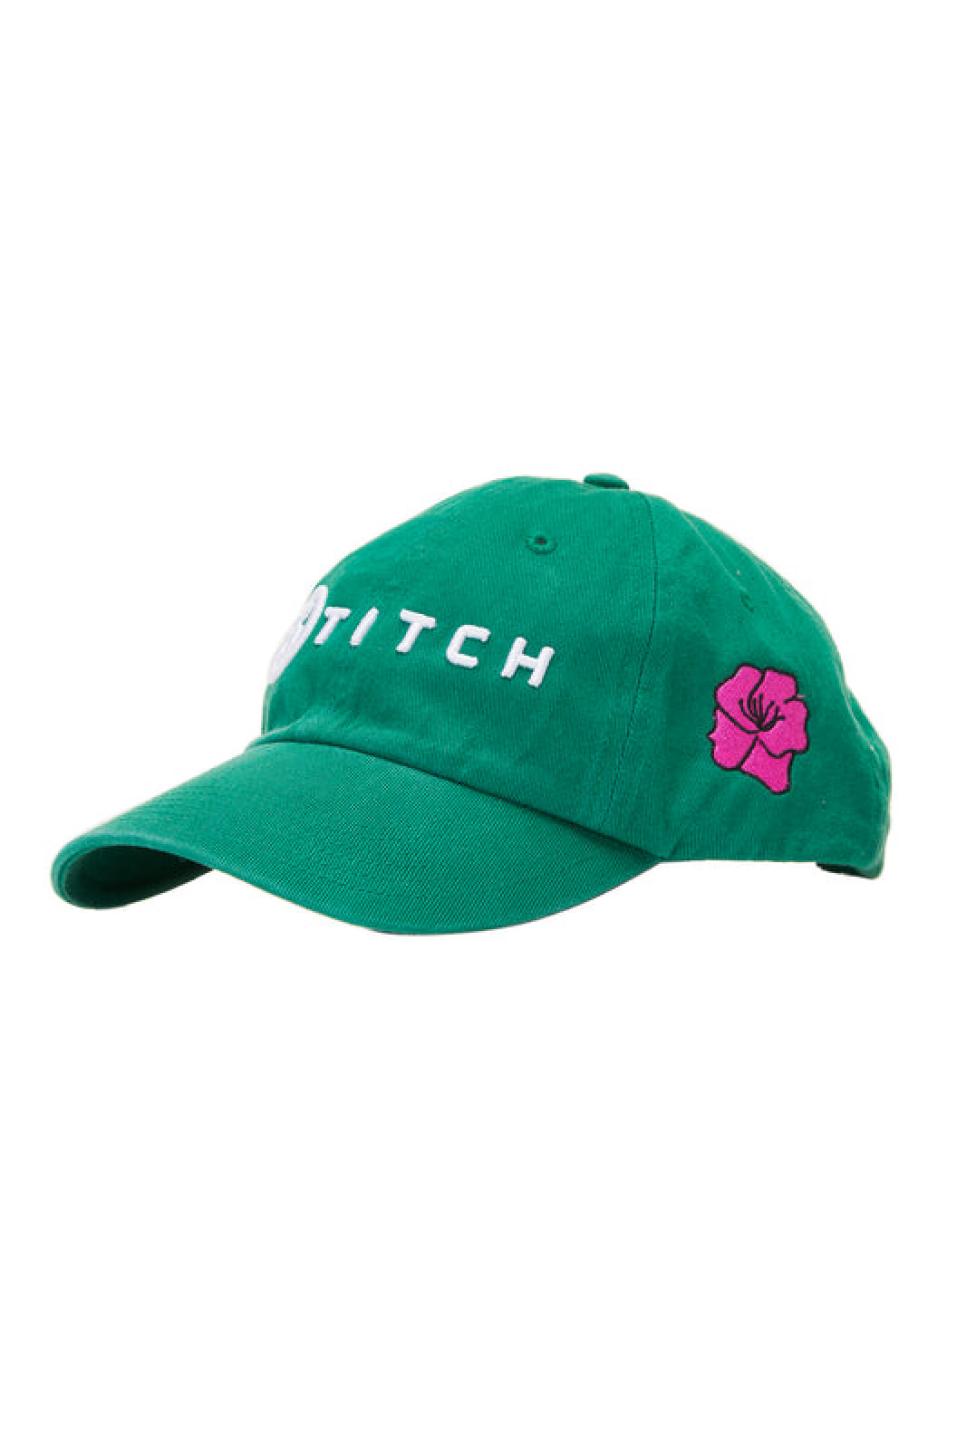 rx-stitchstitch-azaleas-in-bloom-hat.jpeg